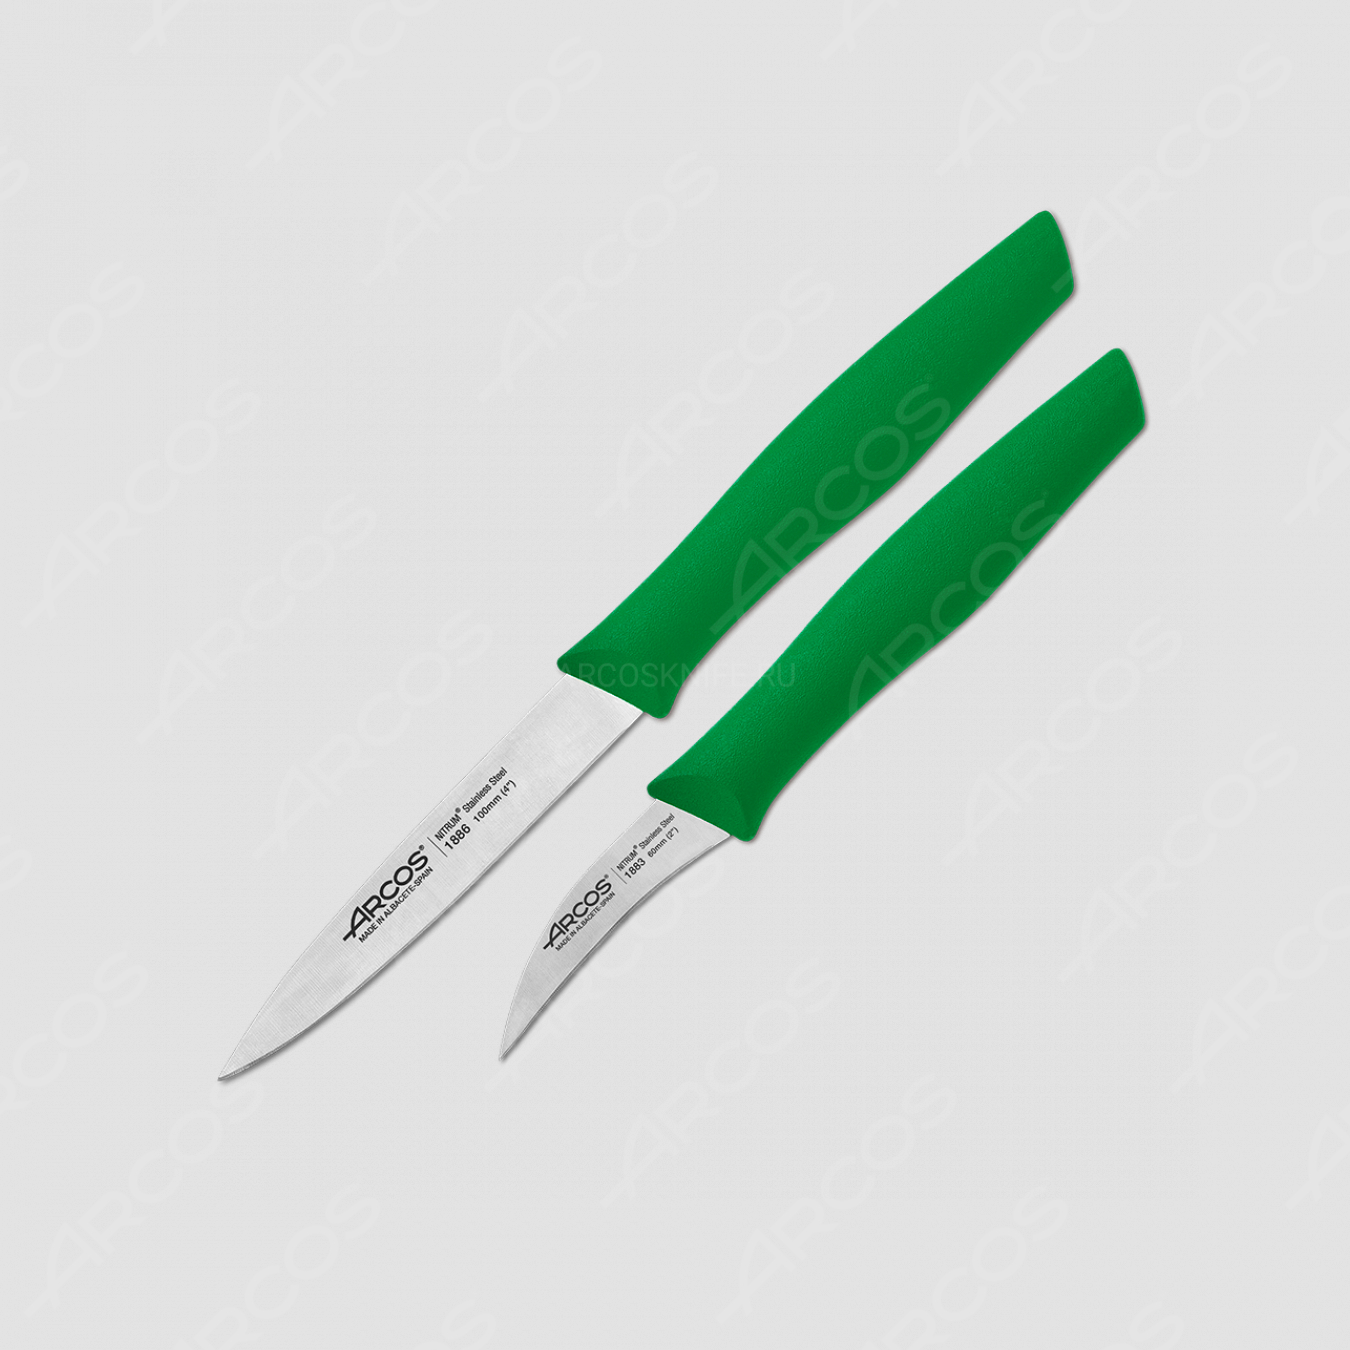 Набор ножей (2 шт.) для чистки и нарезки овощей, рукоять зеленая, серия Nova, ARCOS, Испания